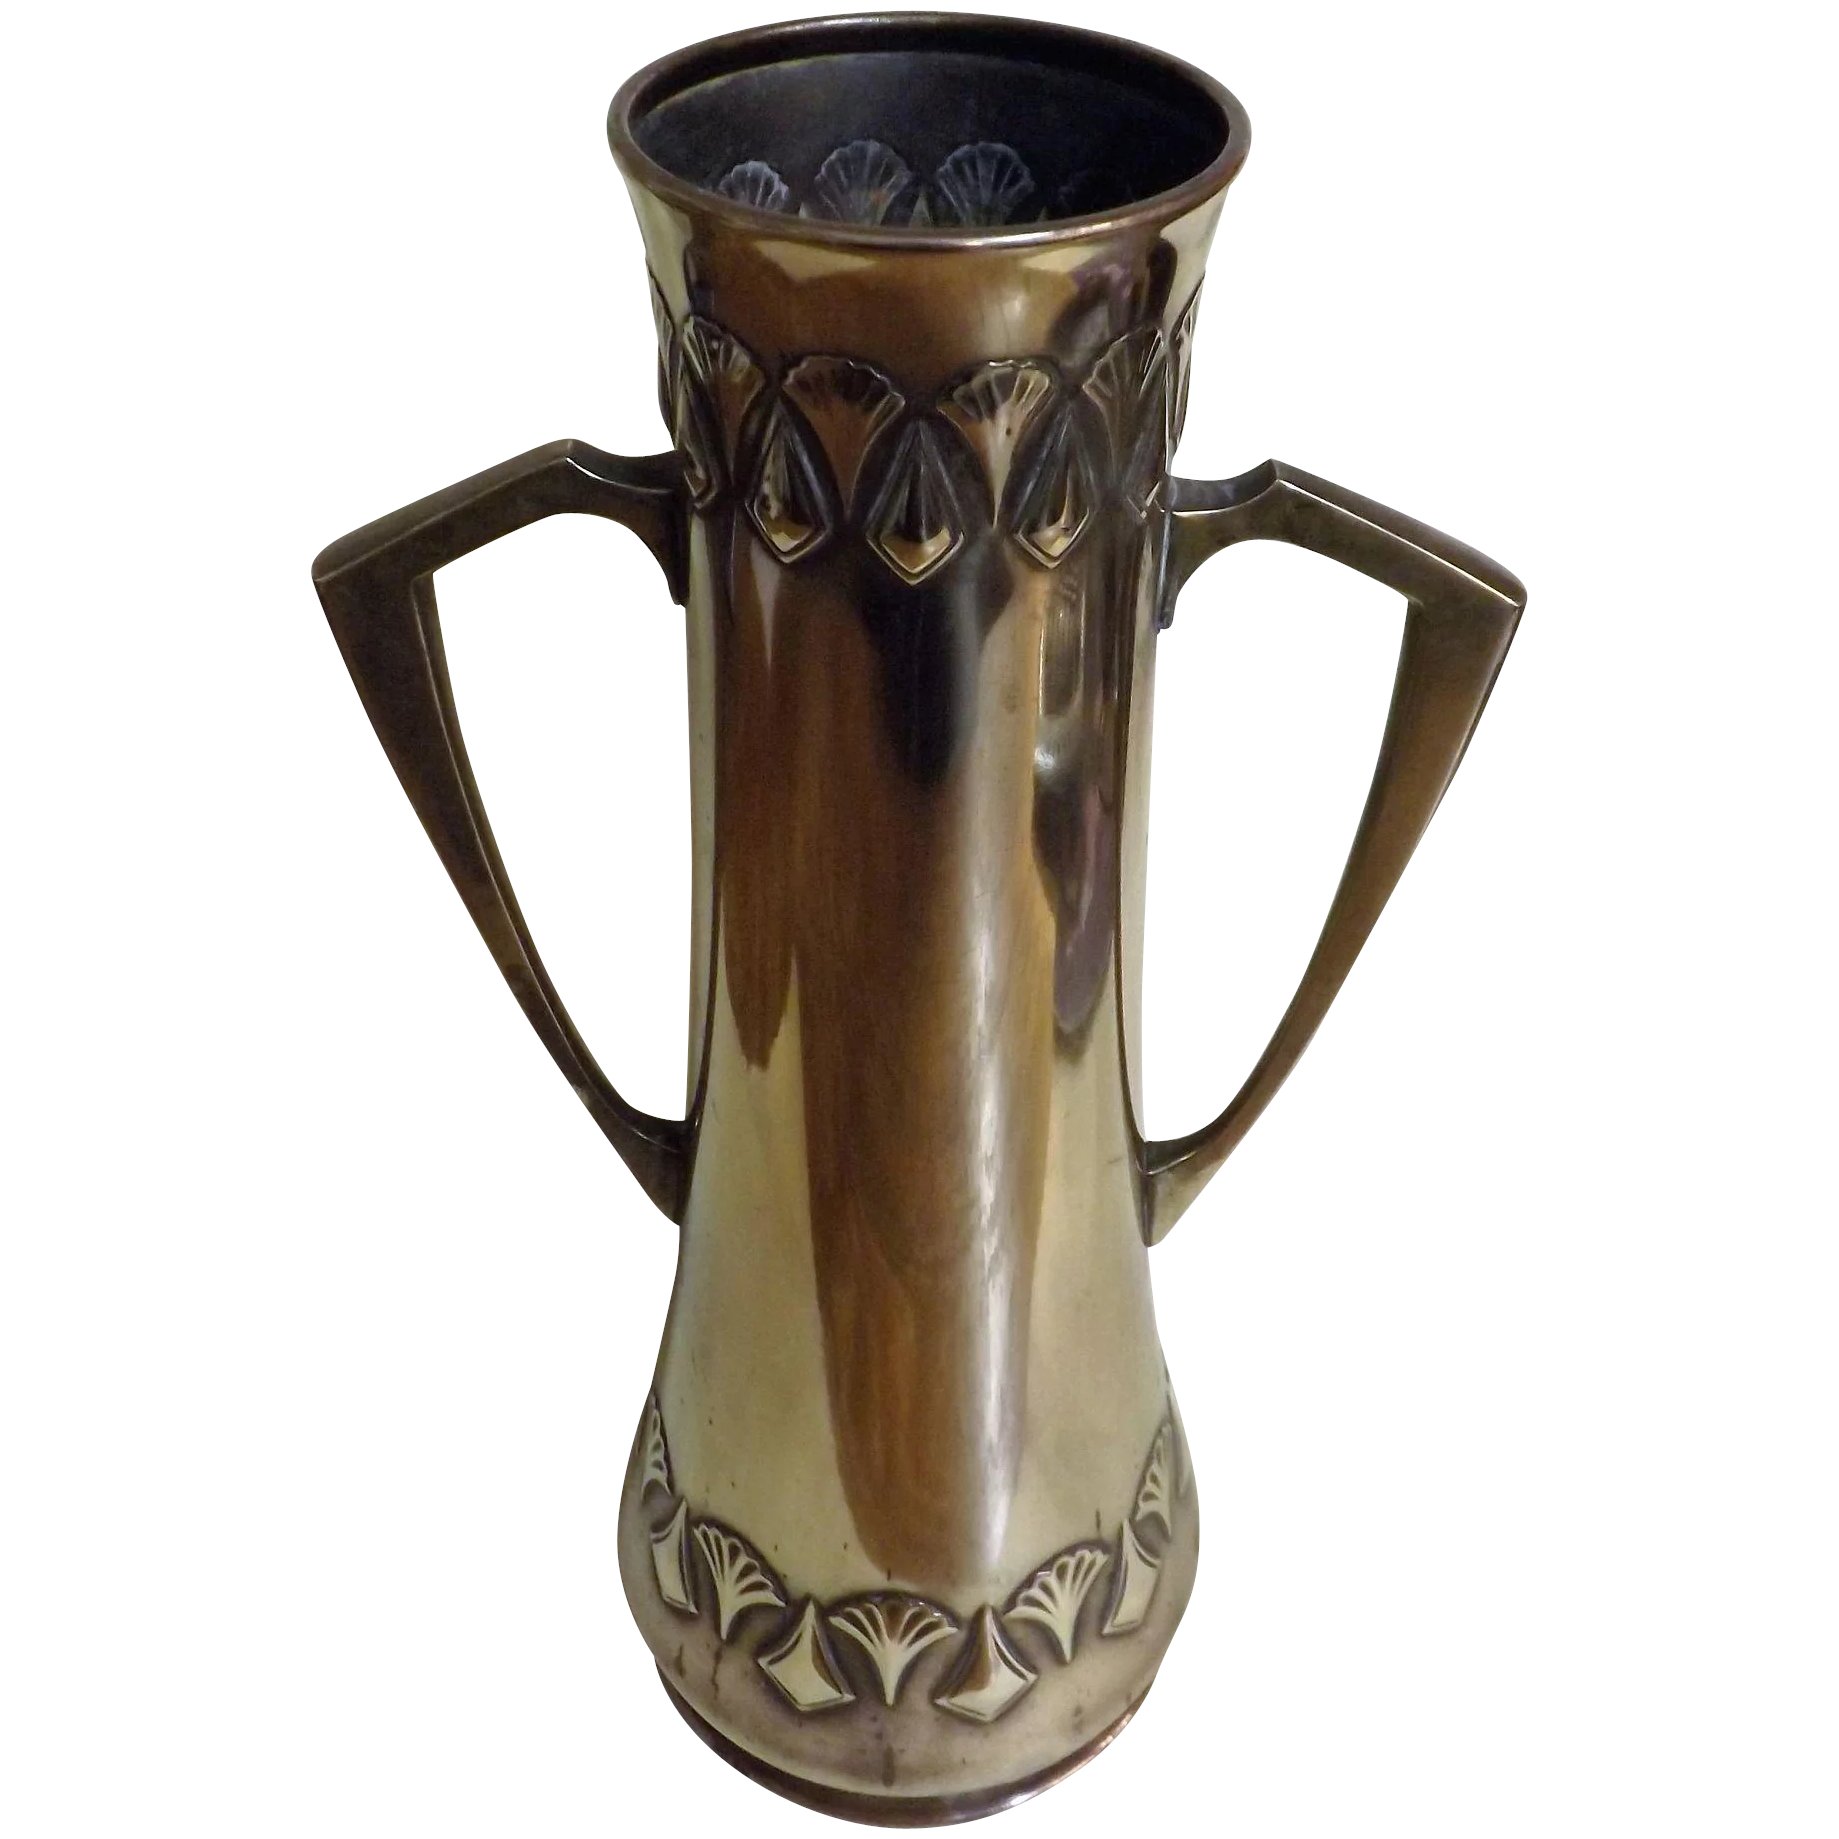 WMF Jugendstil Vase Circa - Germany 1890- 1910